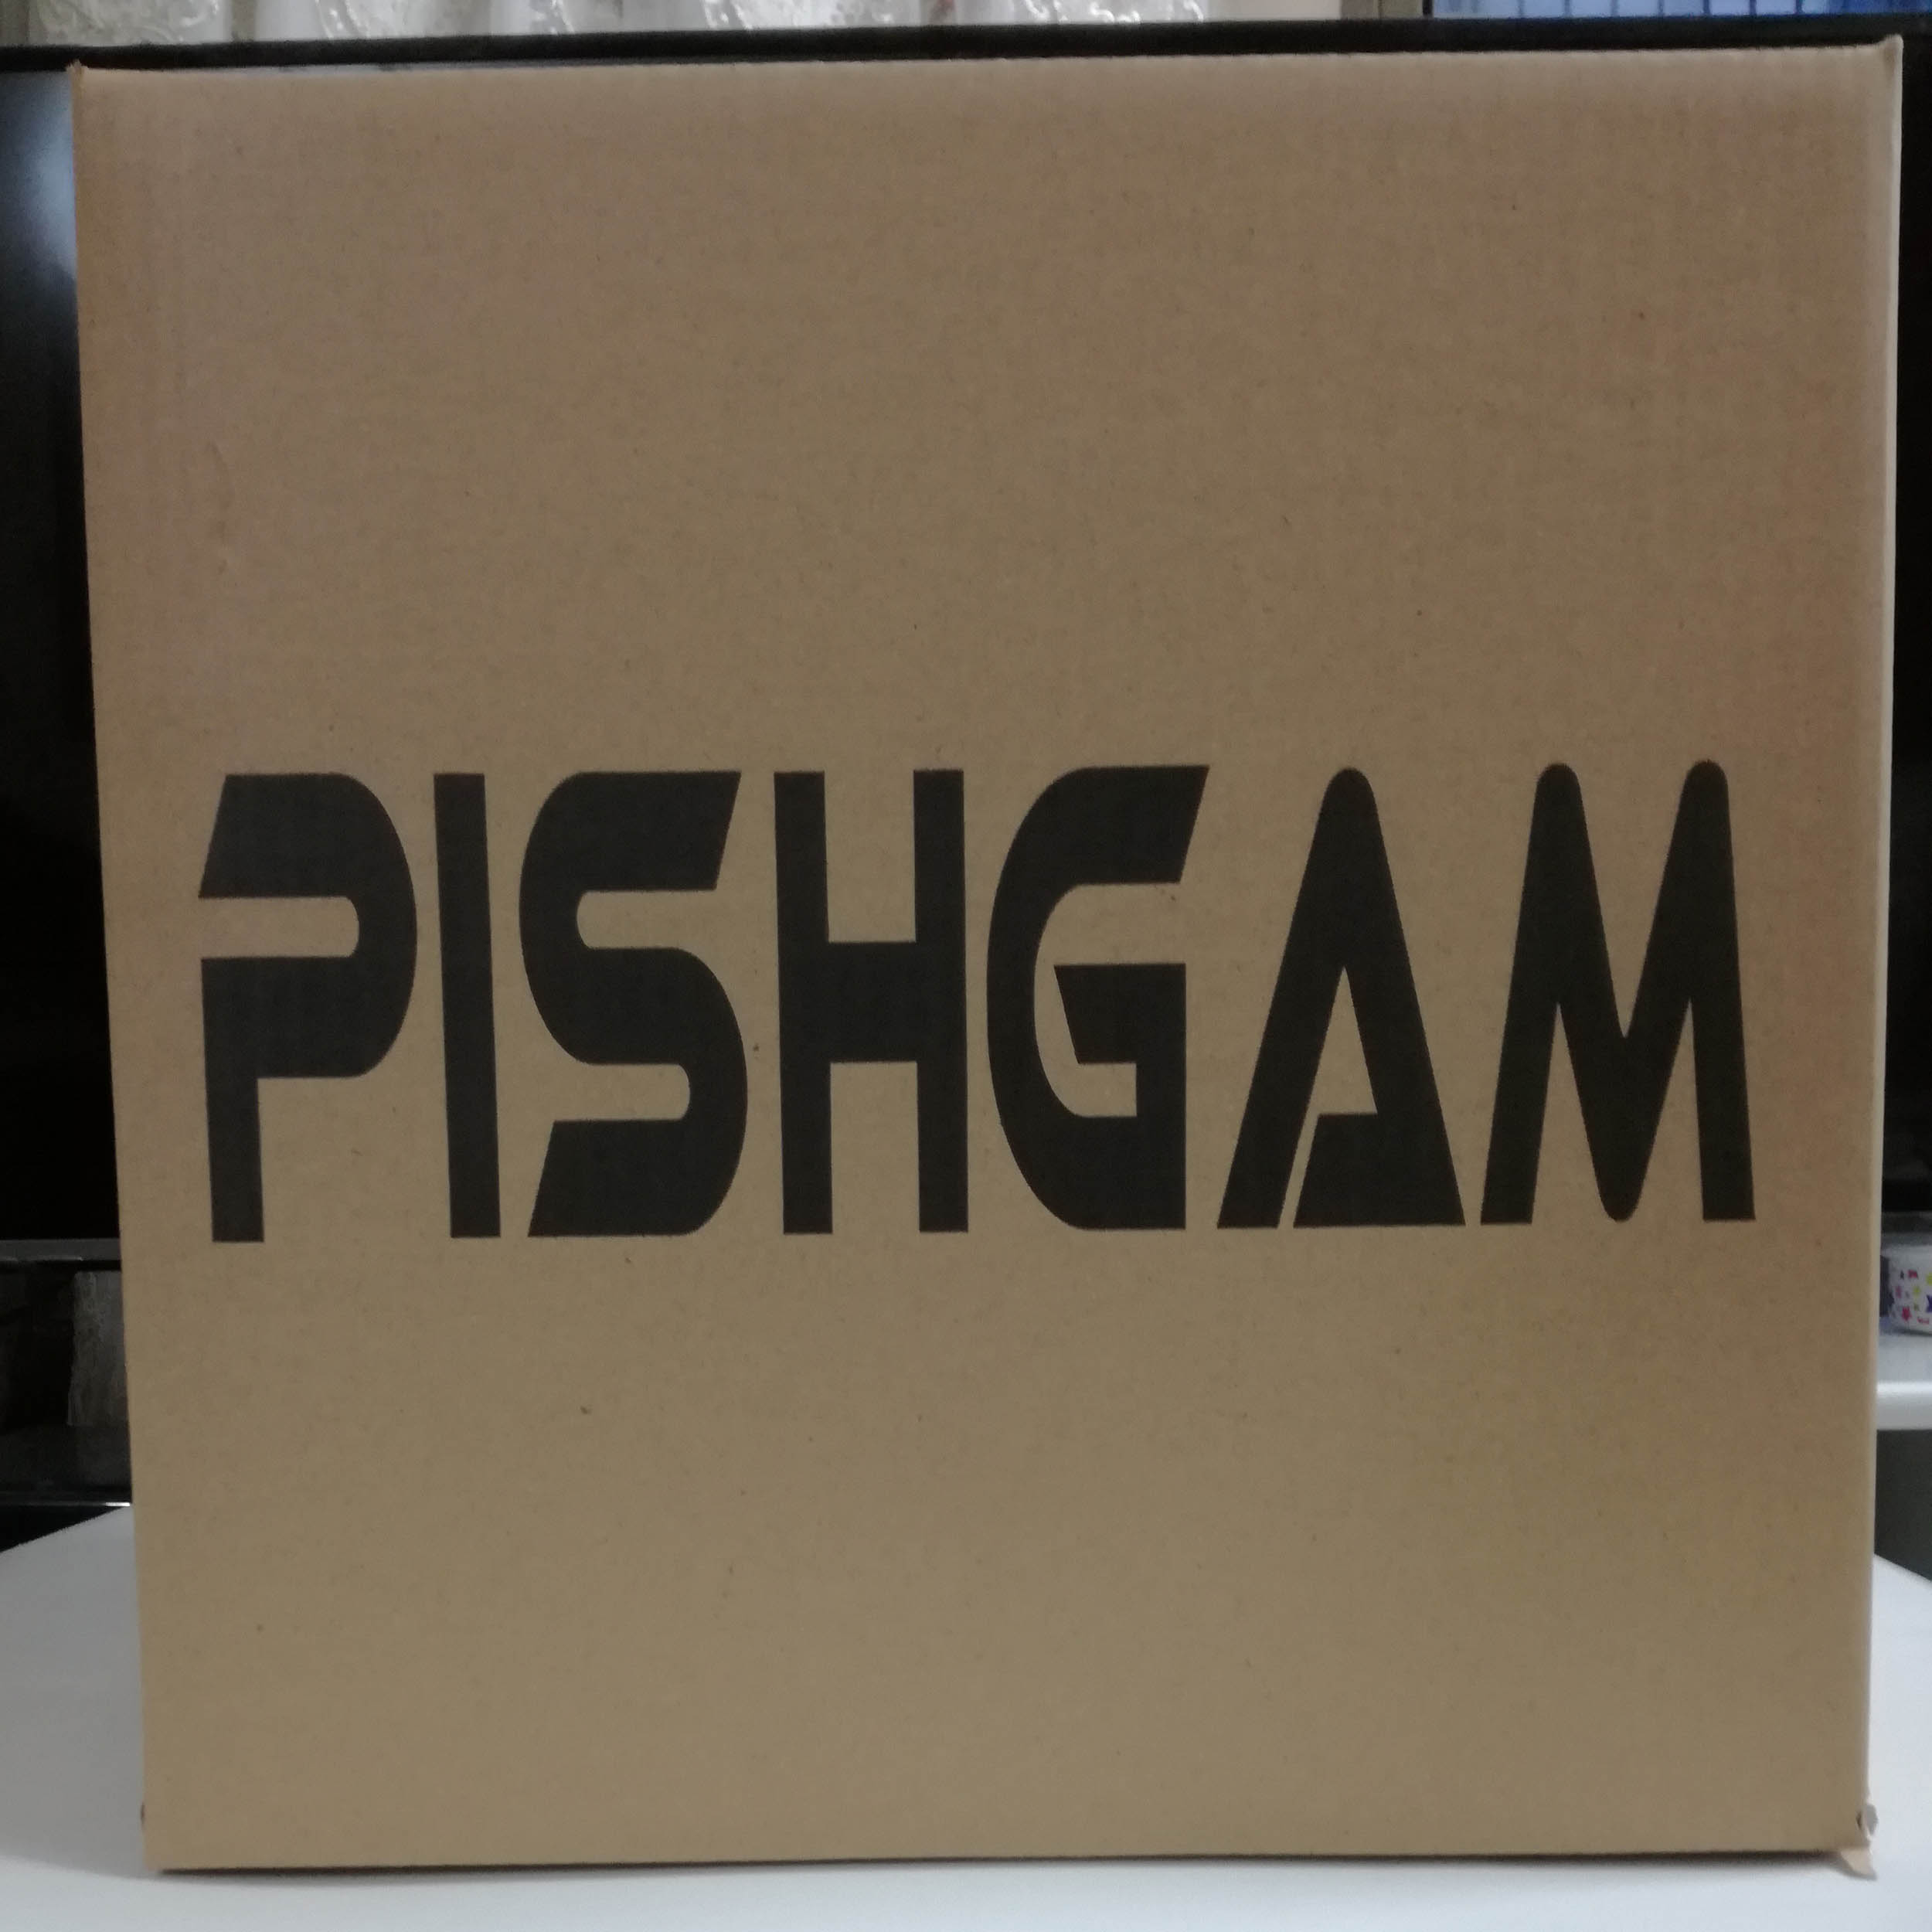 چادر عکاسی پیشگام مدل PISH3030 ابعاد 30x30 سانتی متر